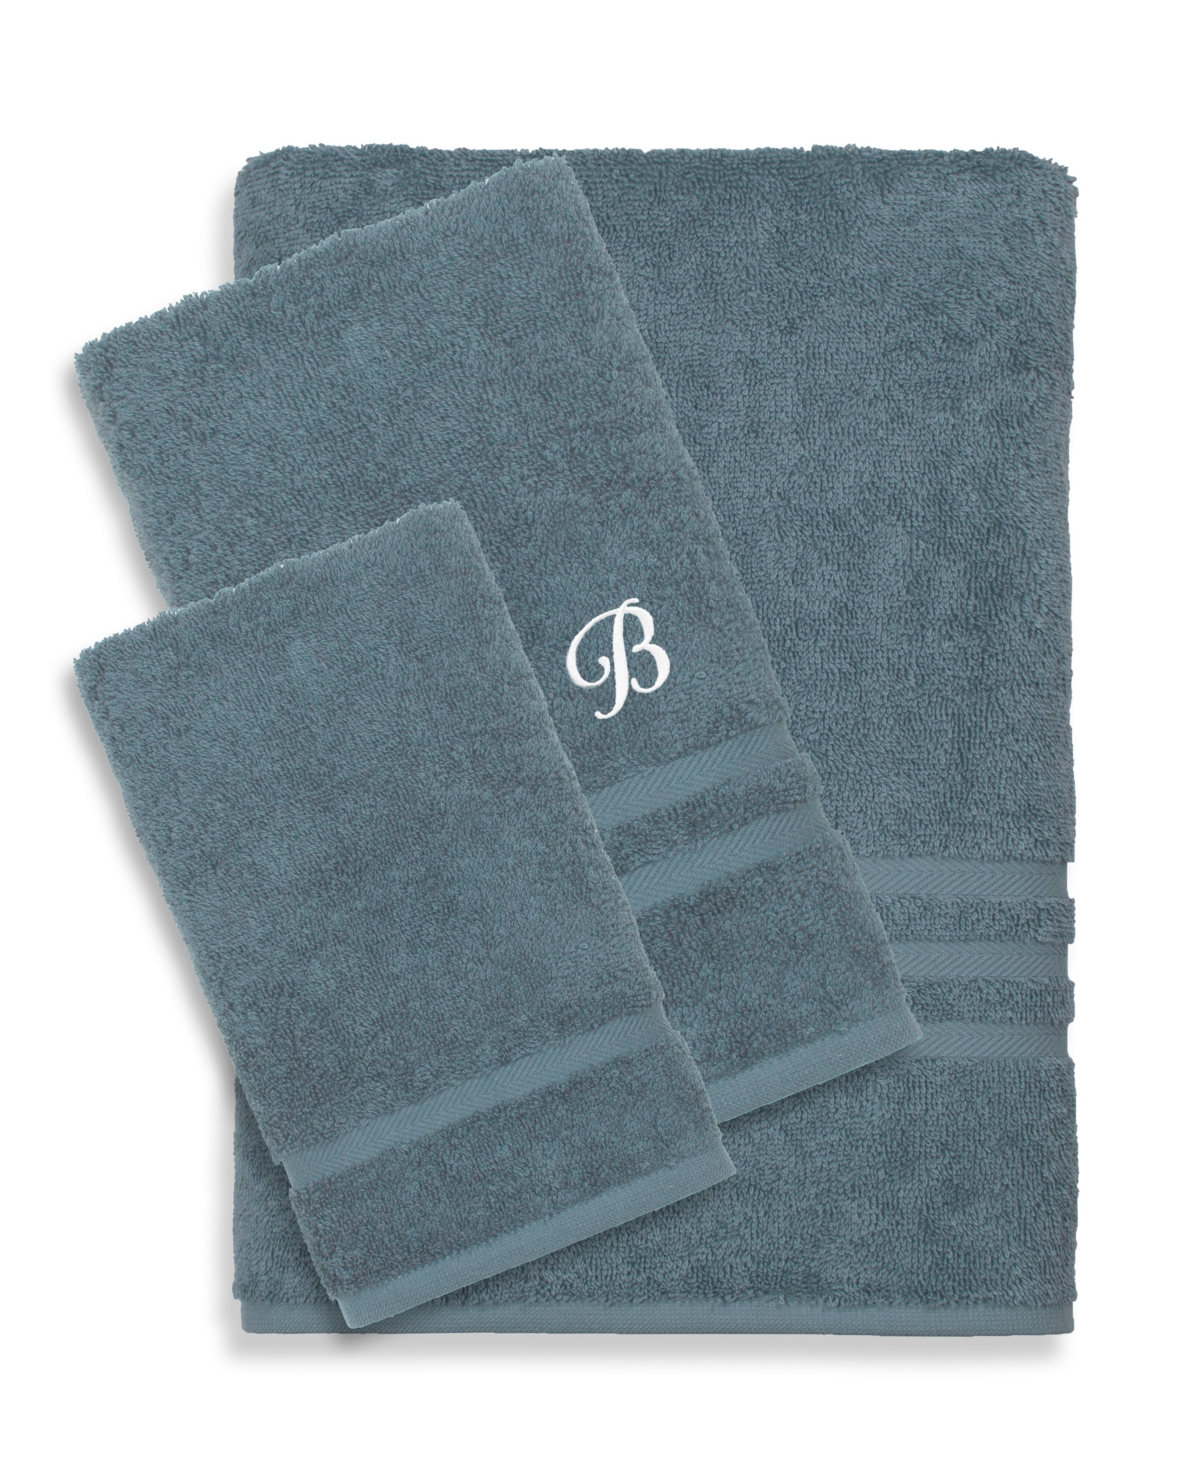 Linum Home Textiles Turkish Cotton Personalized Denzi Towel Set, 3 Piece Bedding In Blue